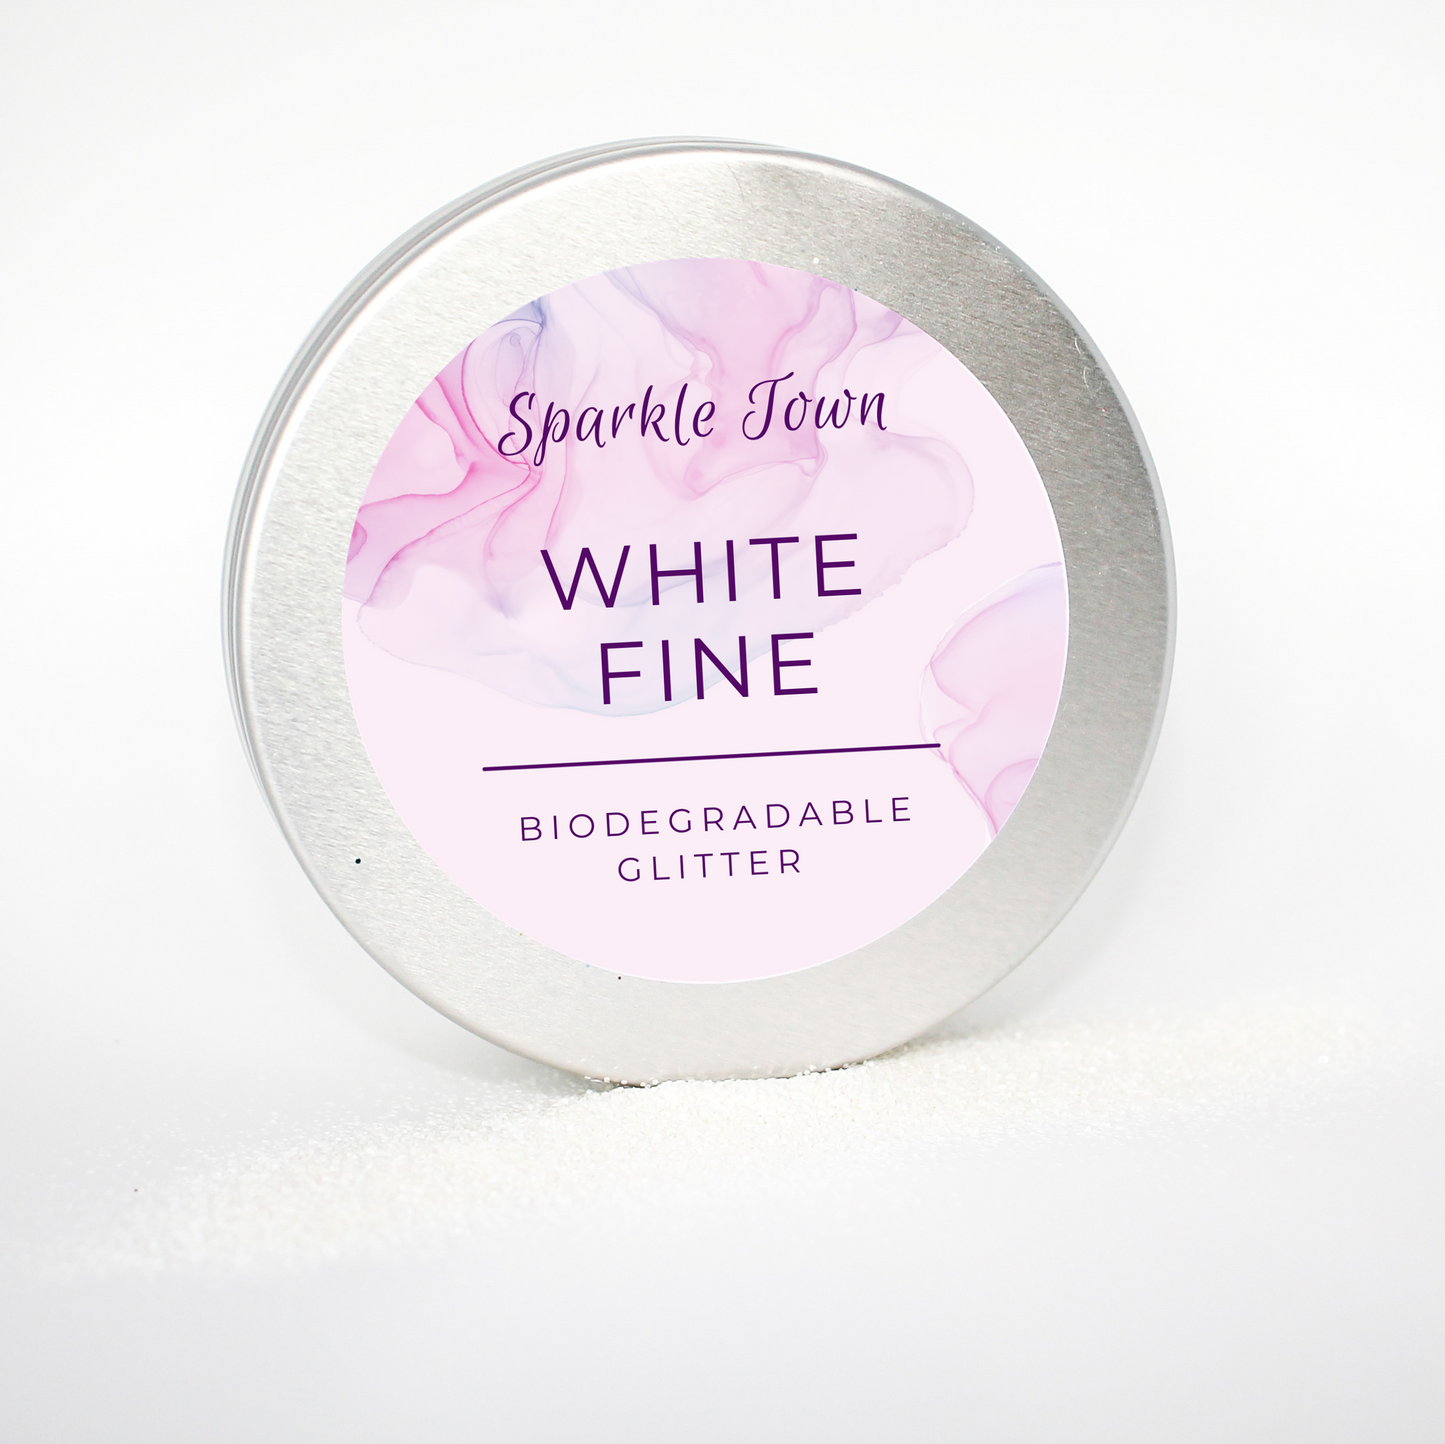 White Fine Biodegradable Glitter